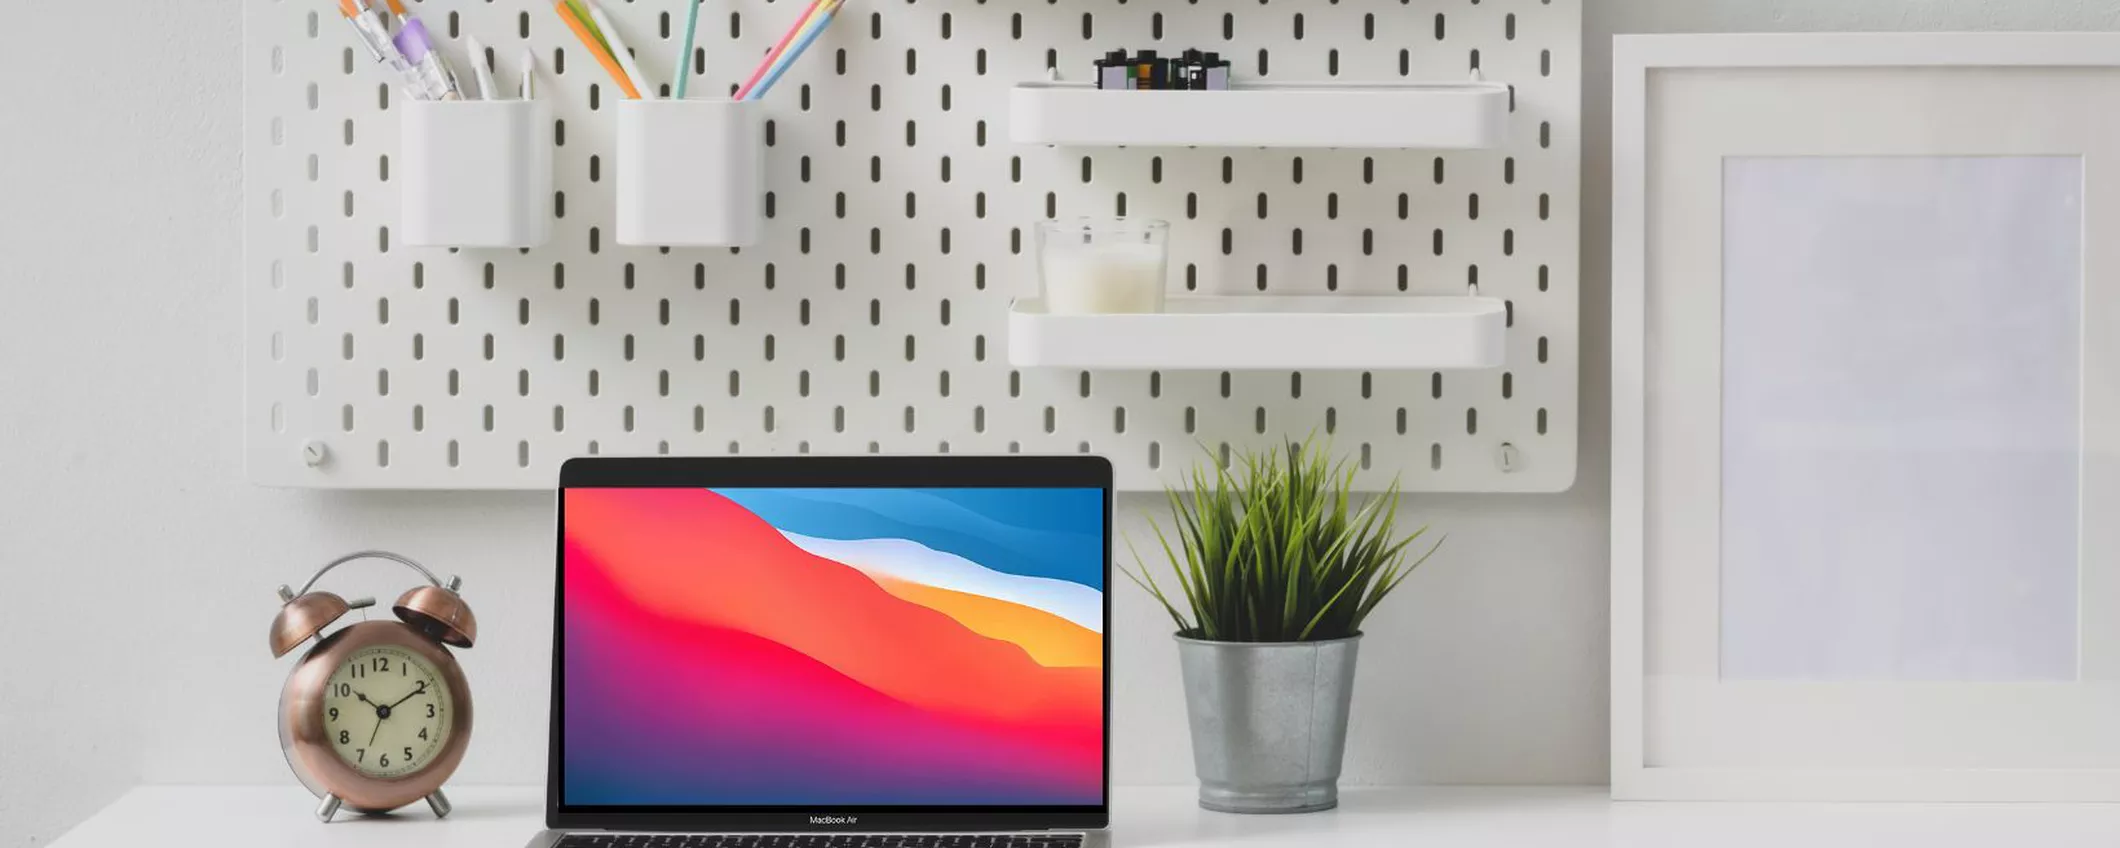 MacBook Air 2020 a -320€: il notebook PERFETTO per lavorare in mobilità scontatissimo su Amazon